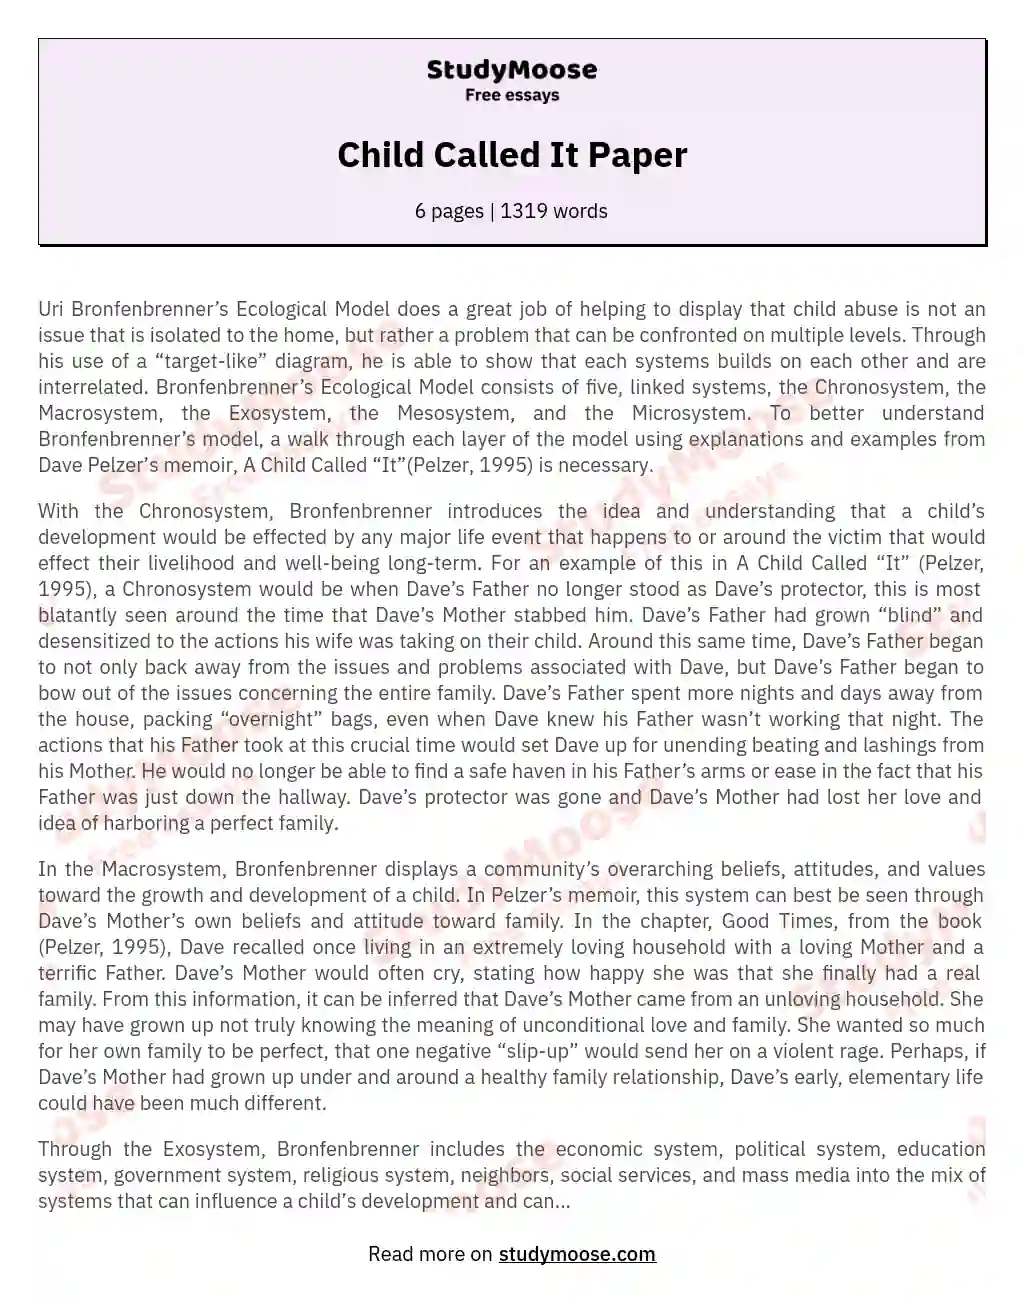 Bronfenbrenner's Ecological Model: Addressing Child Abuse on Multiple Levels essay